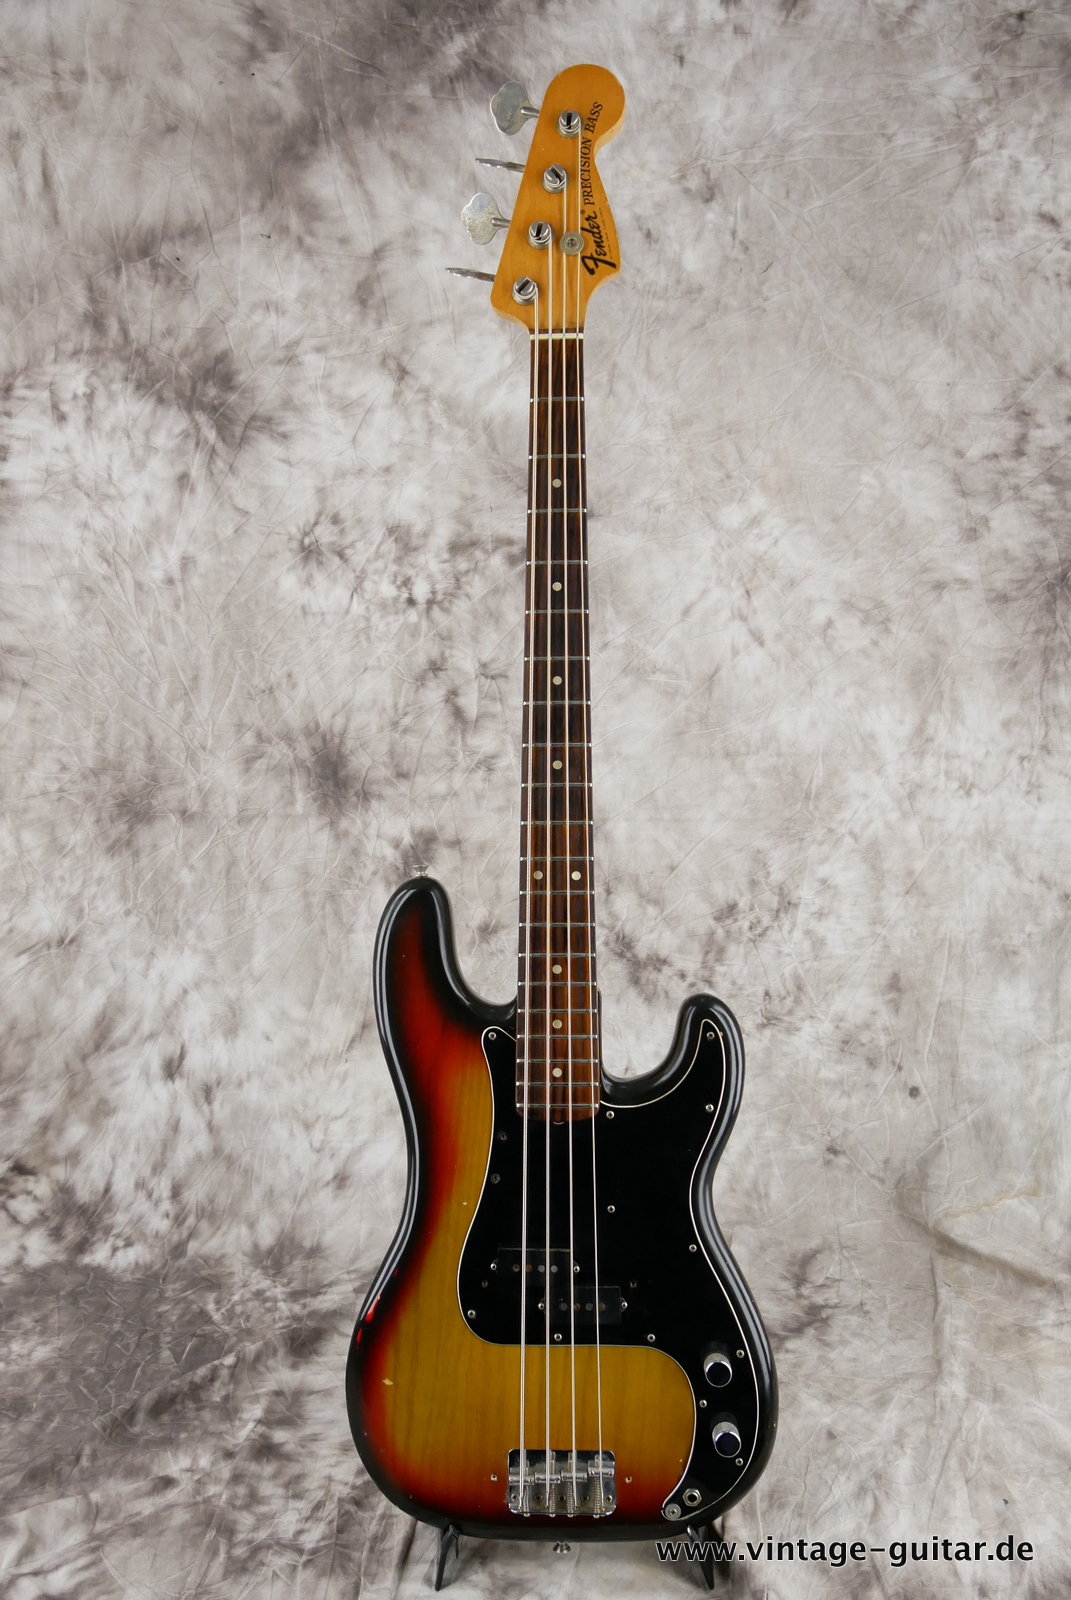 Fender_Precision_Bass_sunburst_1975-001.JPG